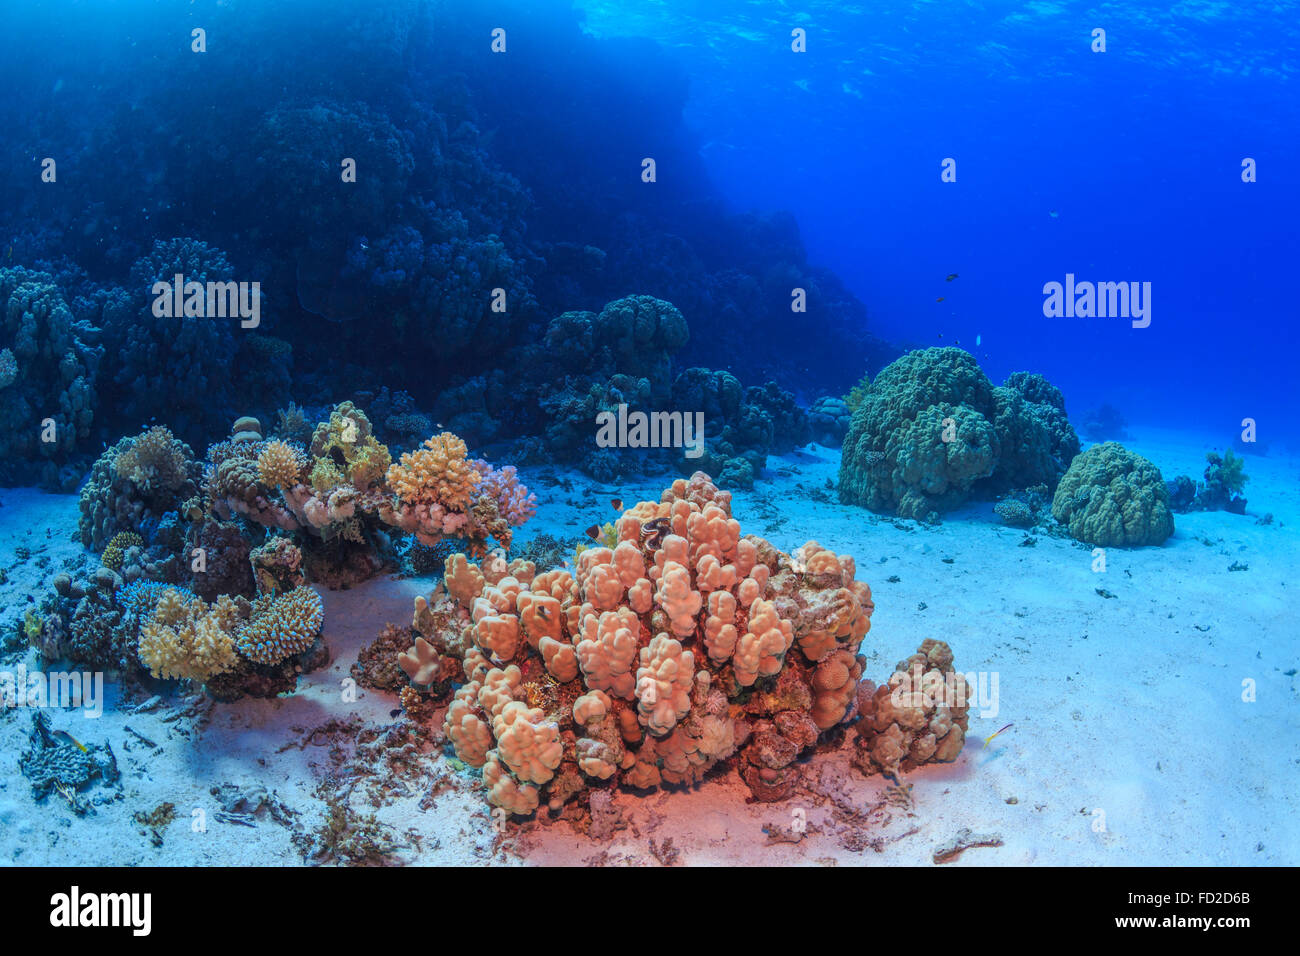 Aquatique, aquarium, fond, bleu, corail, coloré, profond, profondeur, plongeur, plongée, Egypte, exotique, poisson, poissons, le paysage, la vie, Banque D'Images